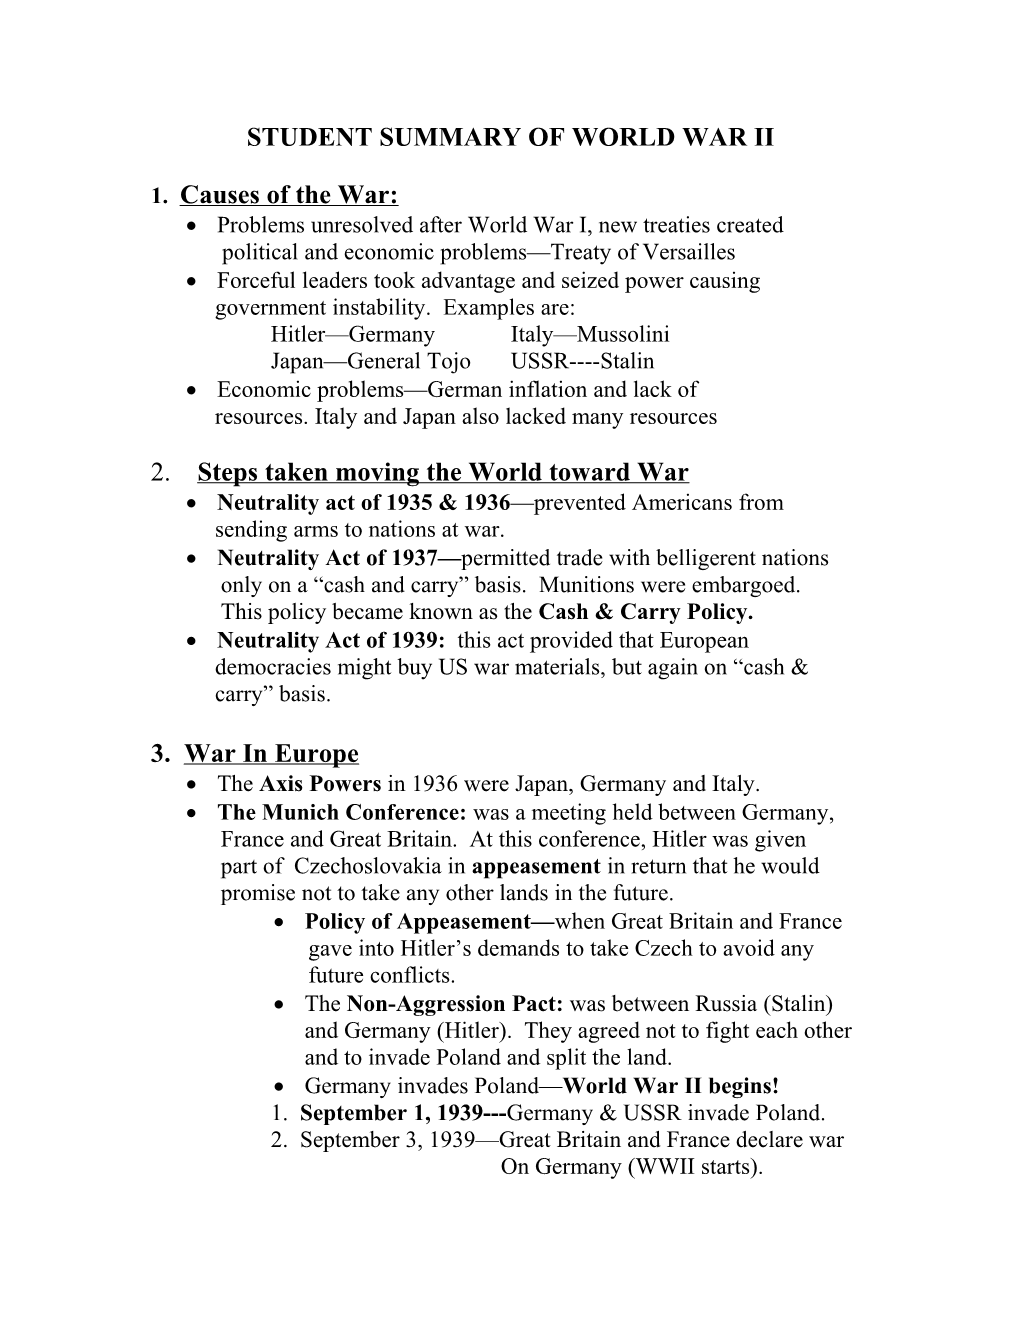 World War Ii Summary of Key Information